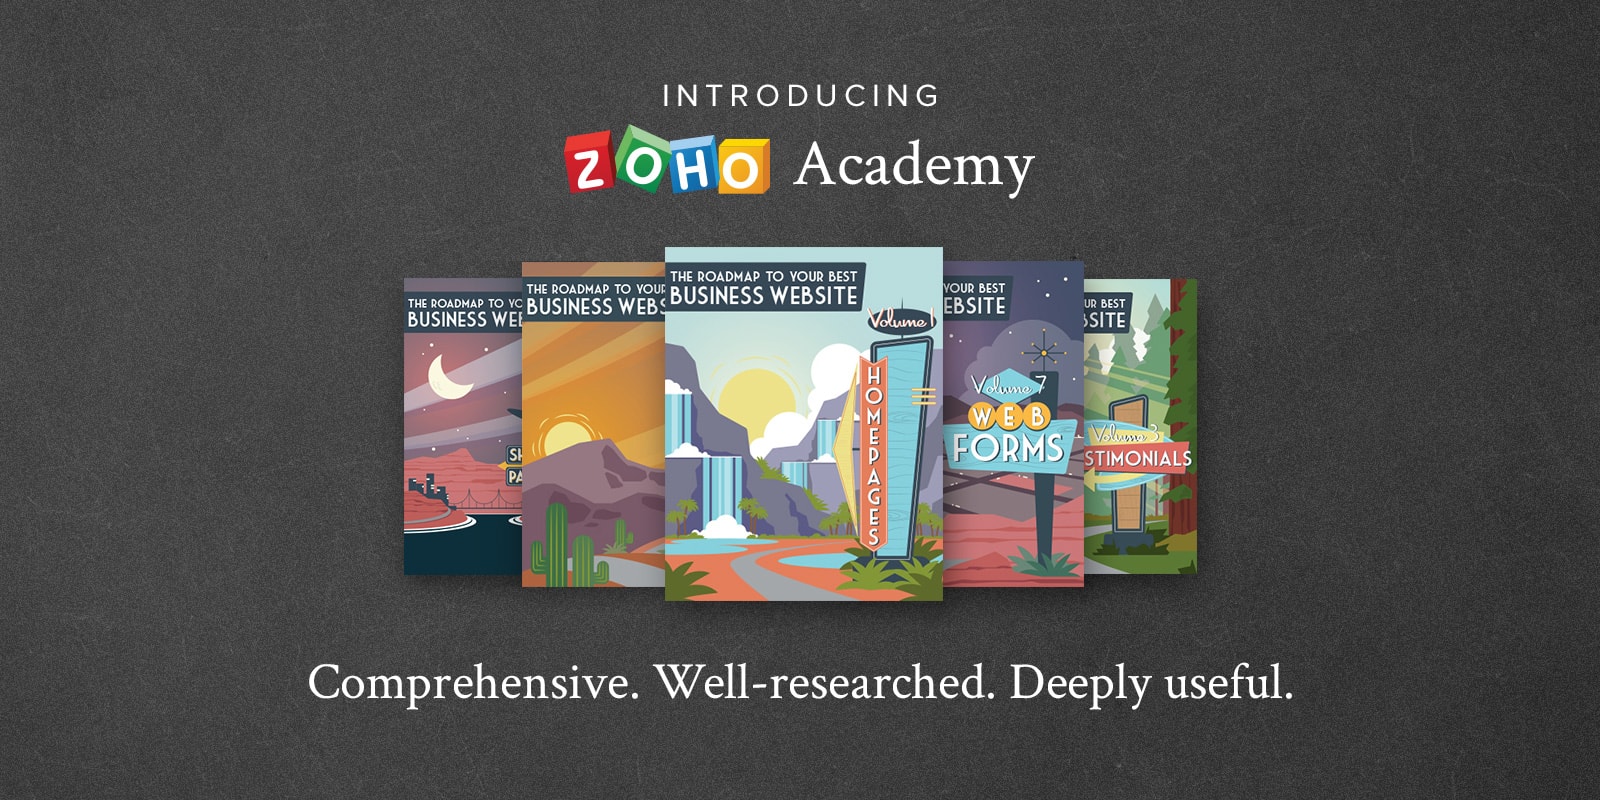 Introducing Zoho Academy